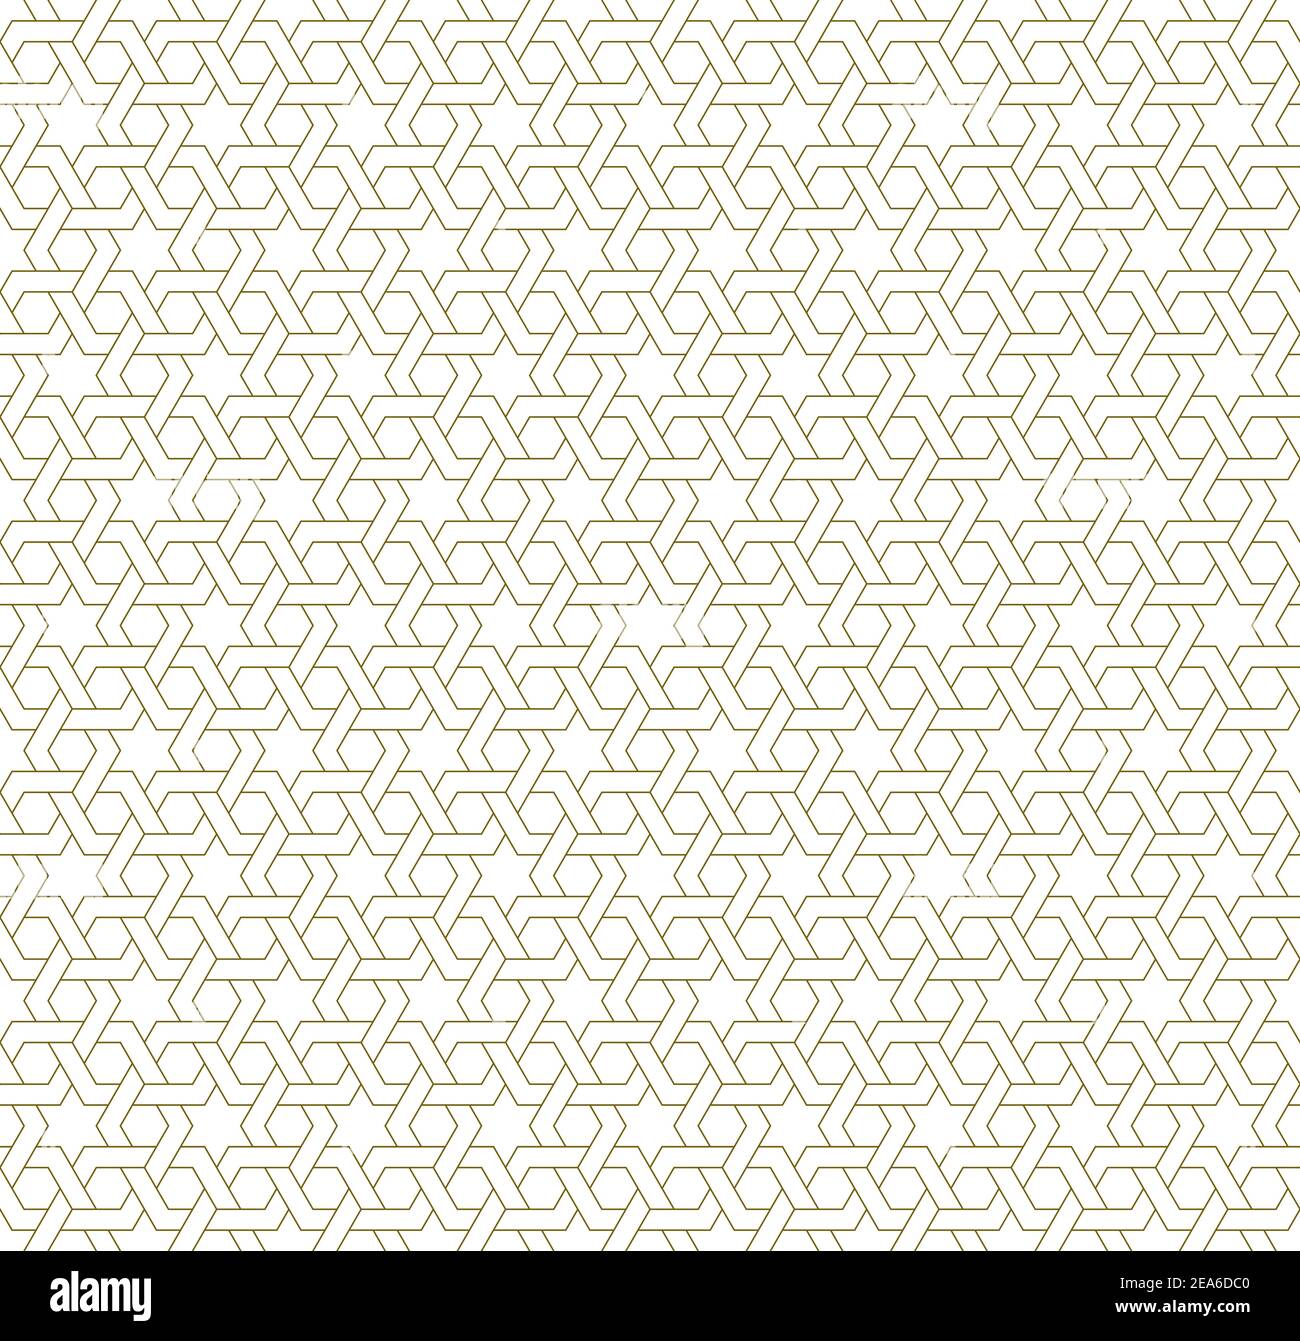 Decorazioni geometriche senza cuciture basate su arte islamica tradizionale.Brown color lines.Great design for fabric,textile,cover,wrapping paper,background.average Illustrazione Vettoriale